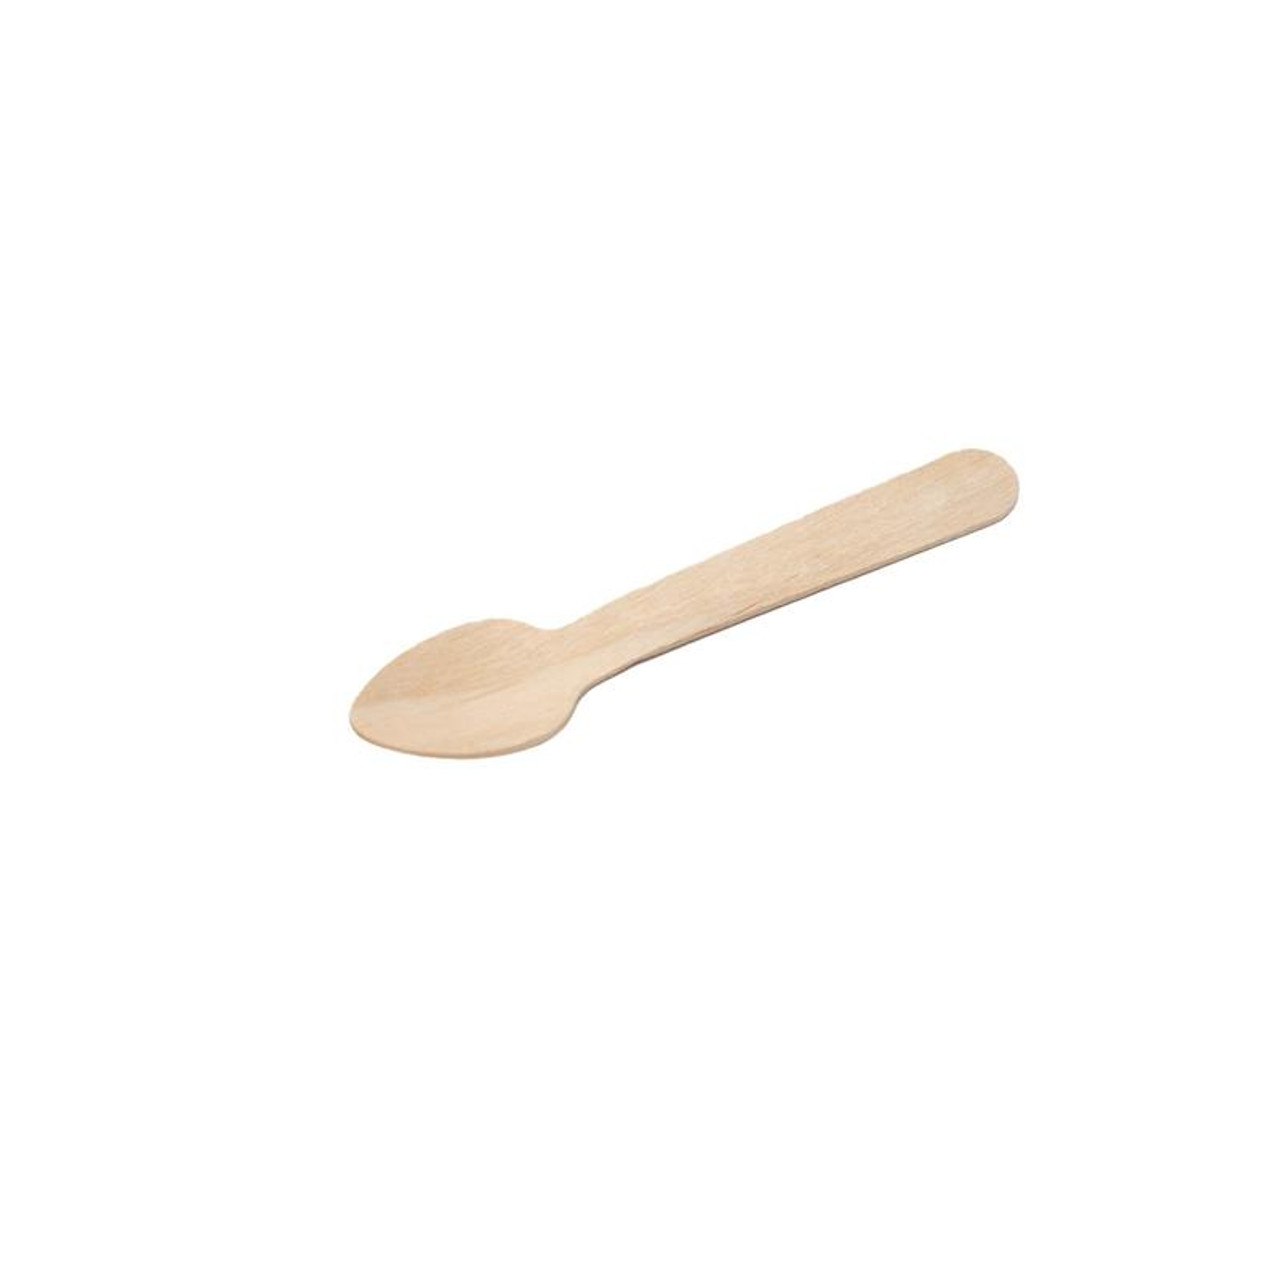 Wooden Tasting Spoon